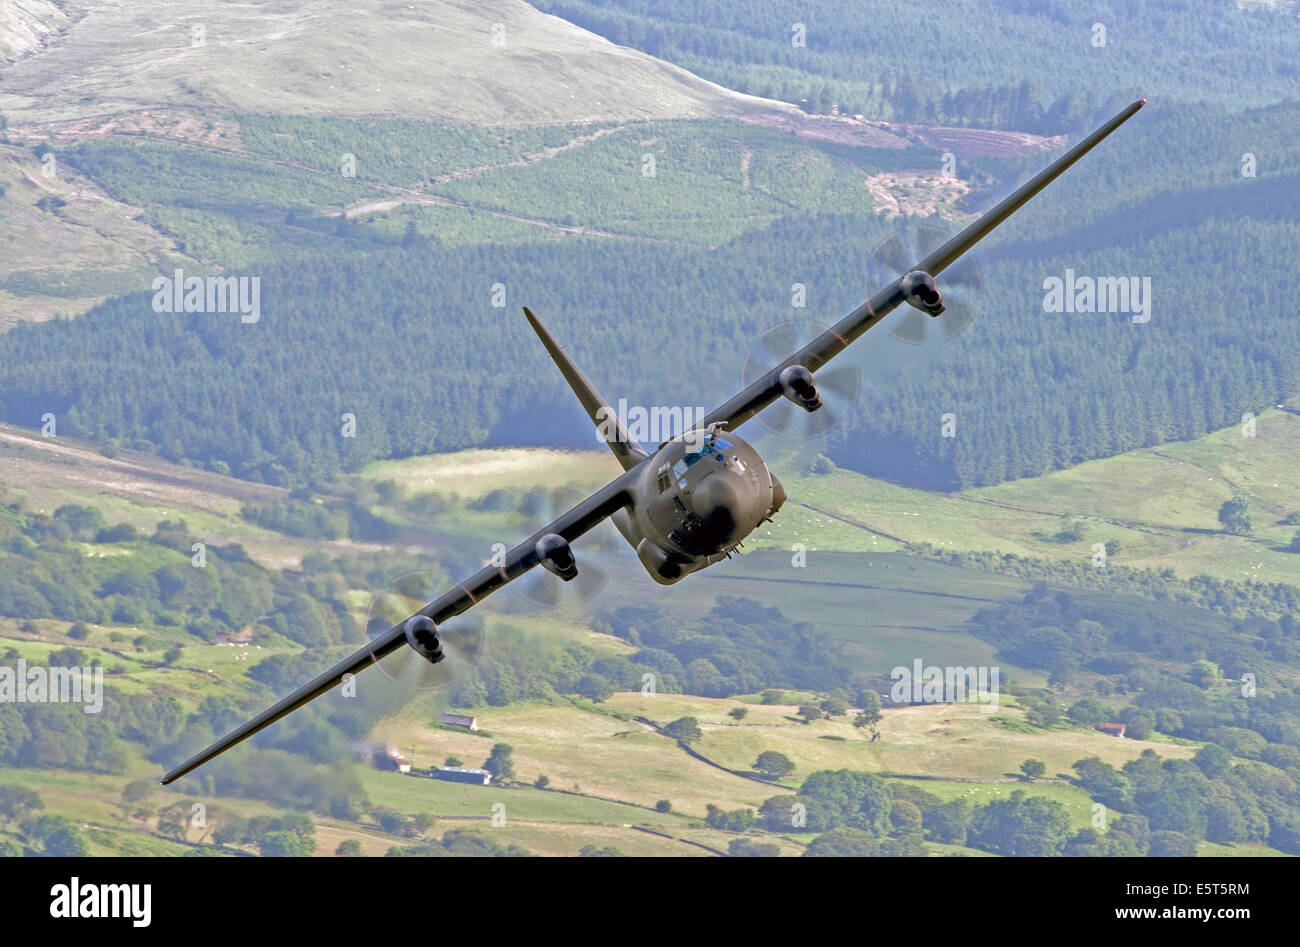 RAF C-130 Hercules volant bas niveau dans la région de Wales Boucle Mach Banque D'Images